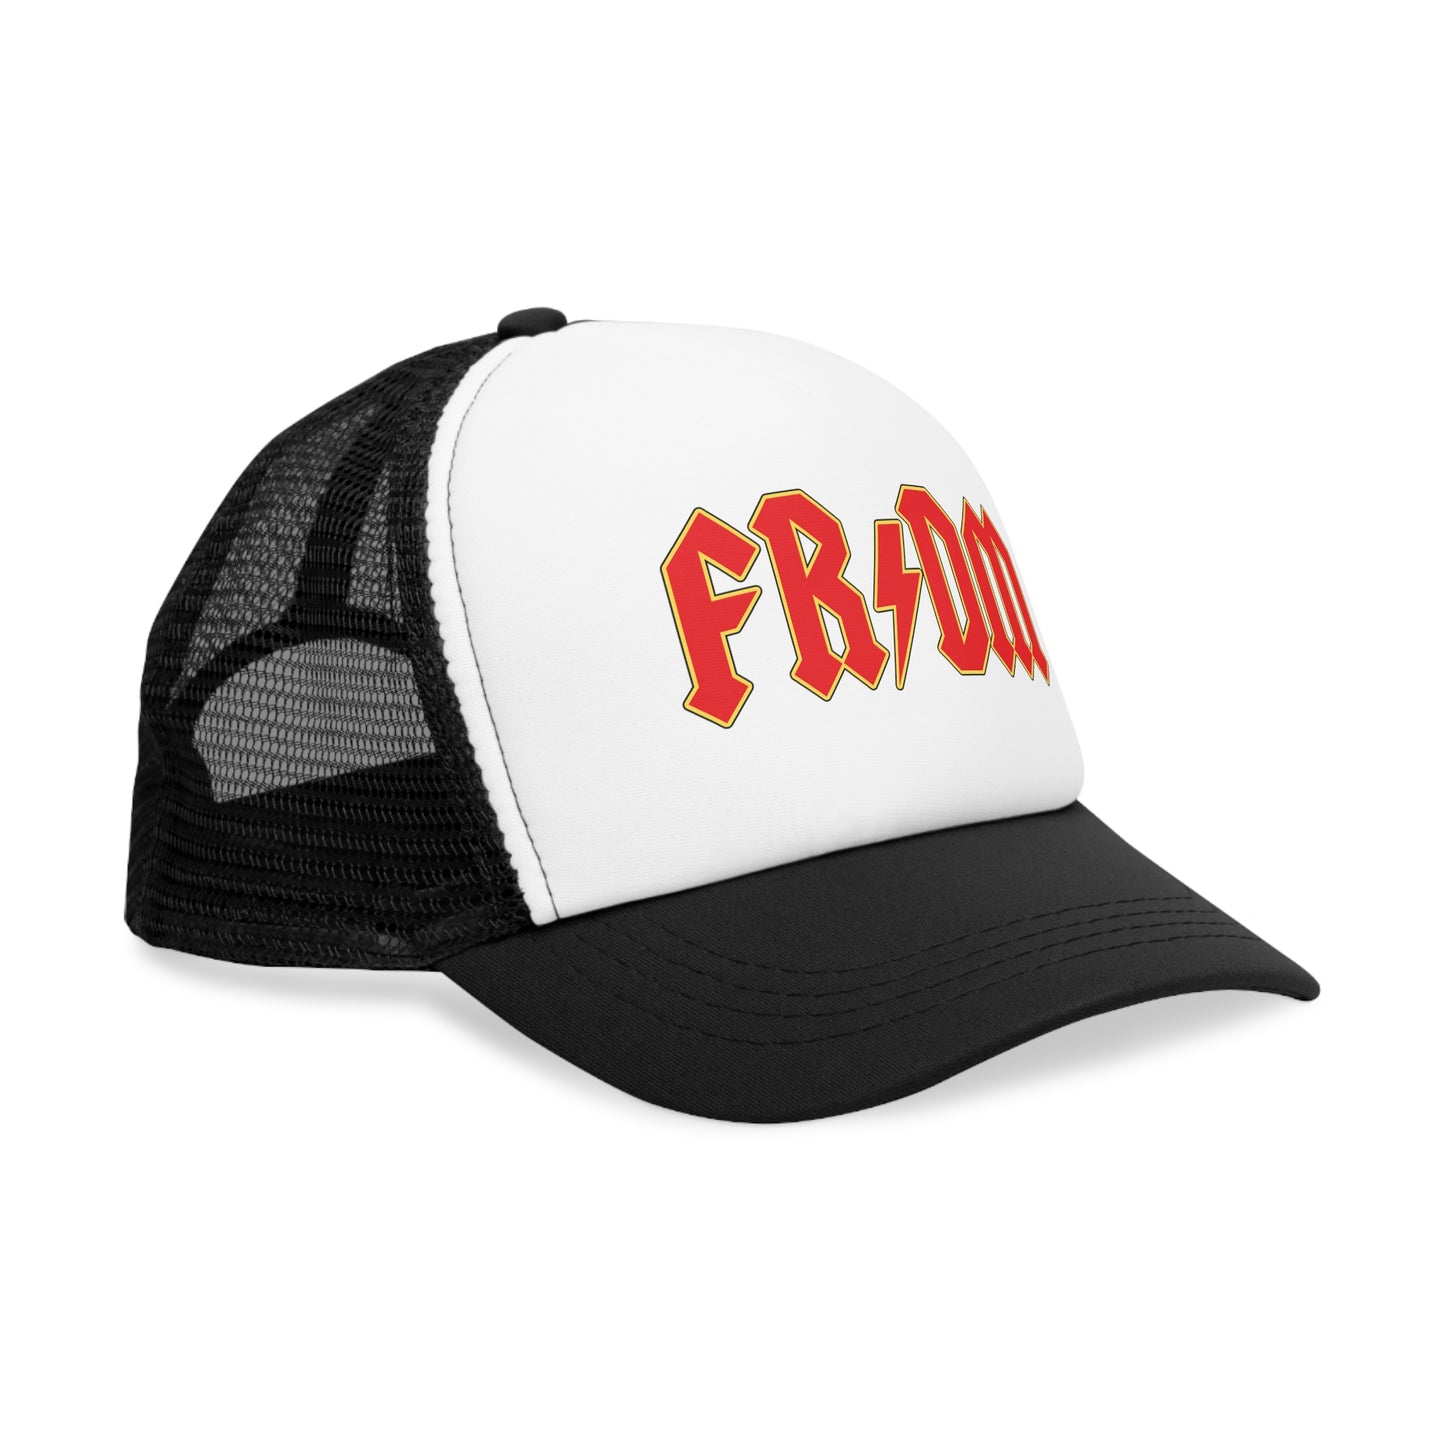 FRDM Rock Mesh Cap